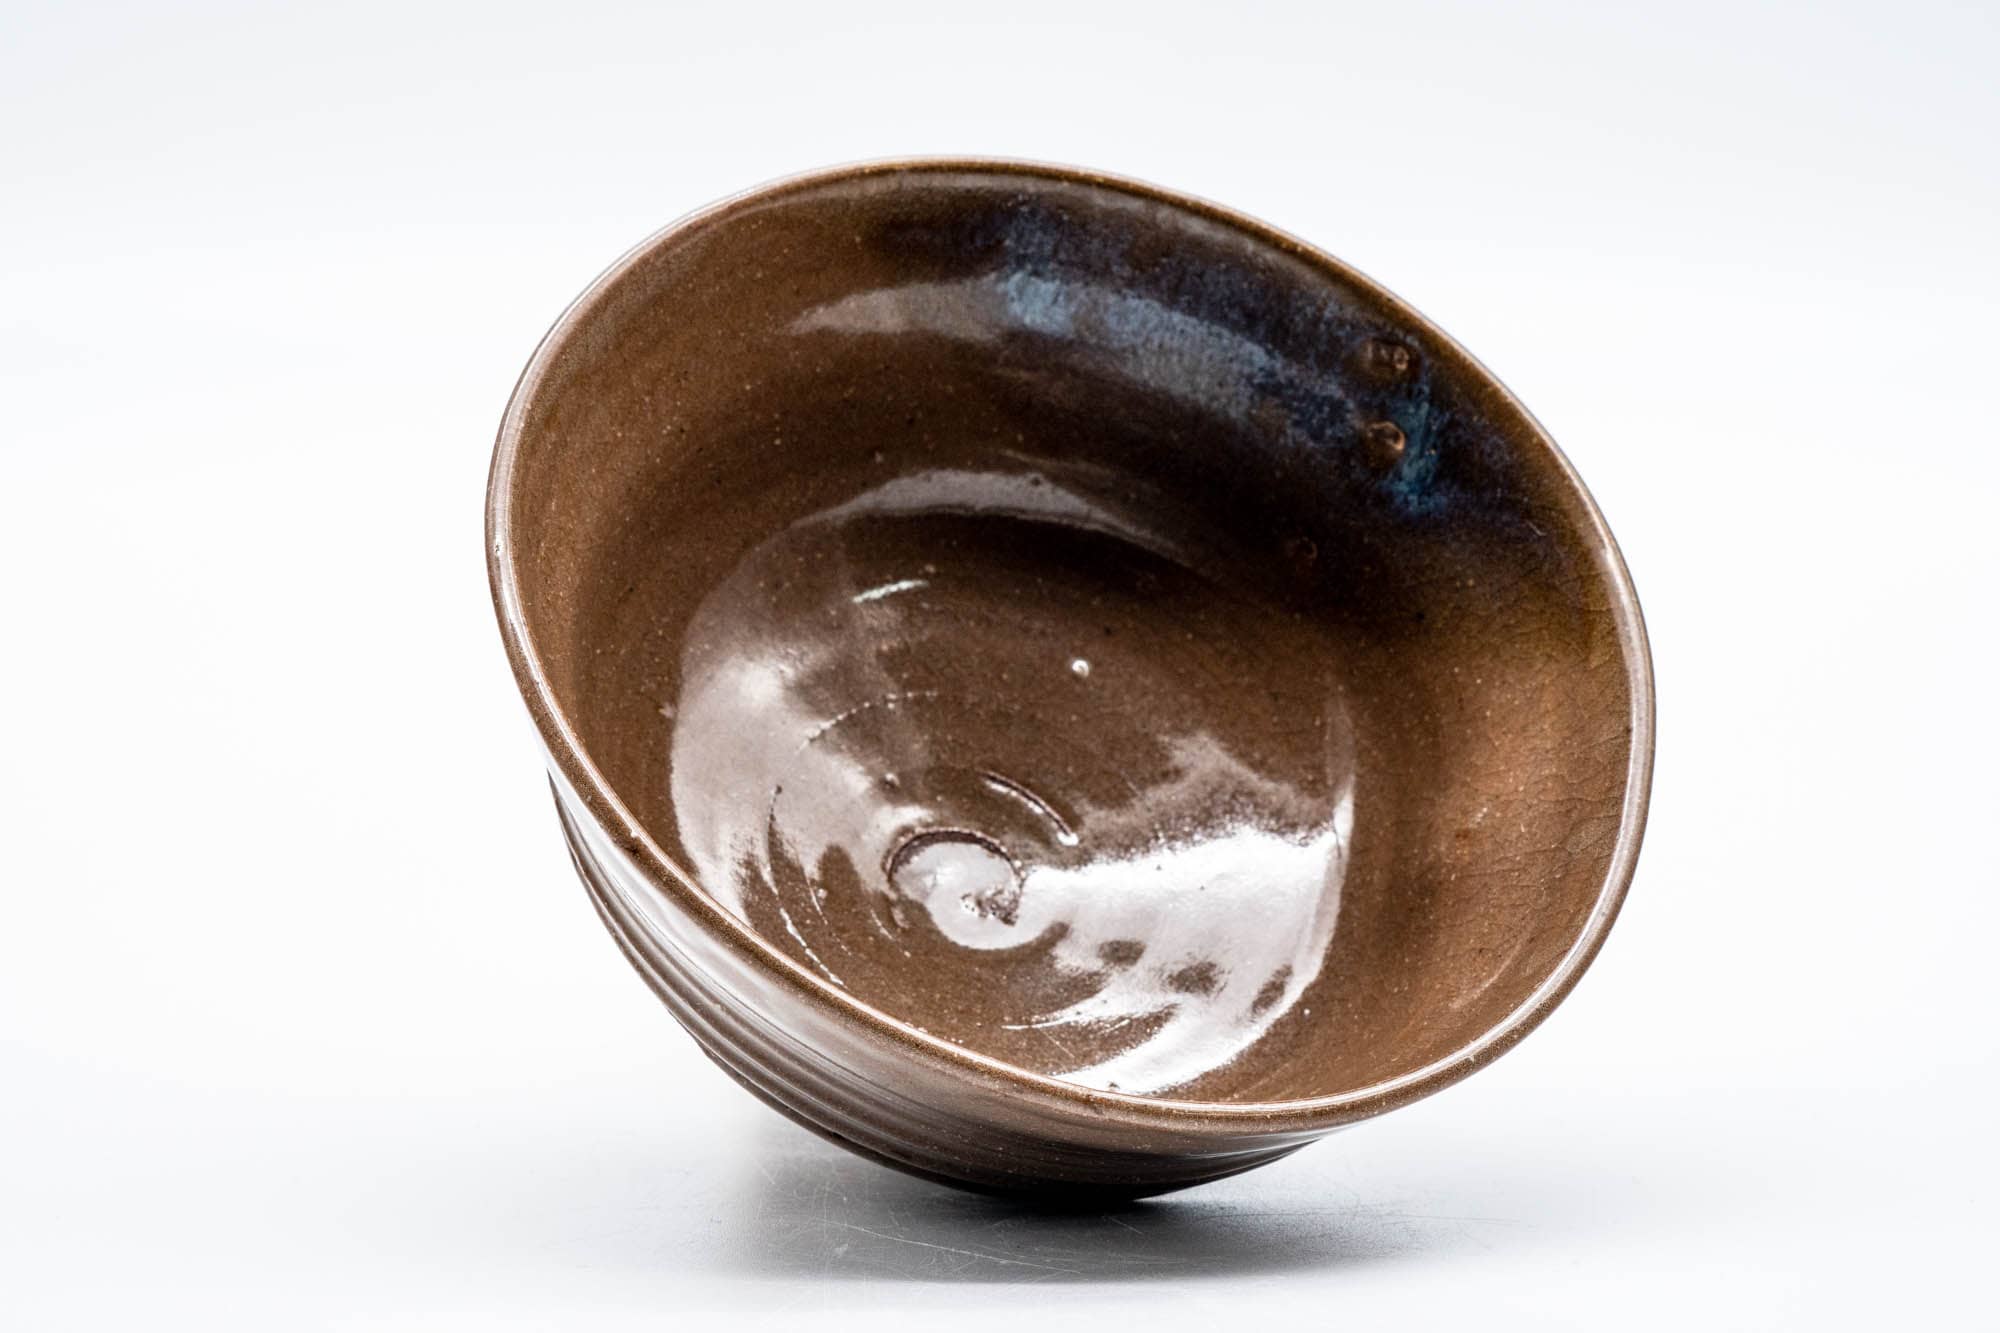 Japanese Matcha Bowl - Brown Glazed Thumb-Indented Ribbed Chawan - 150ml